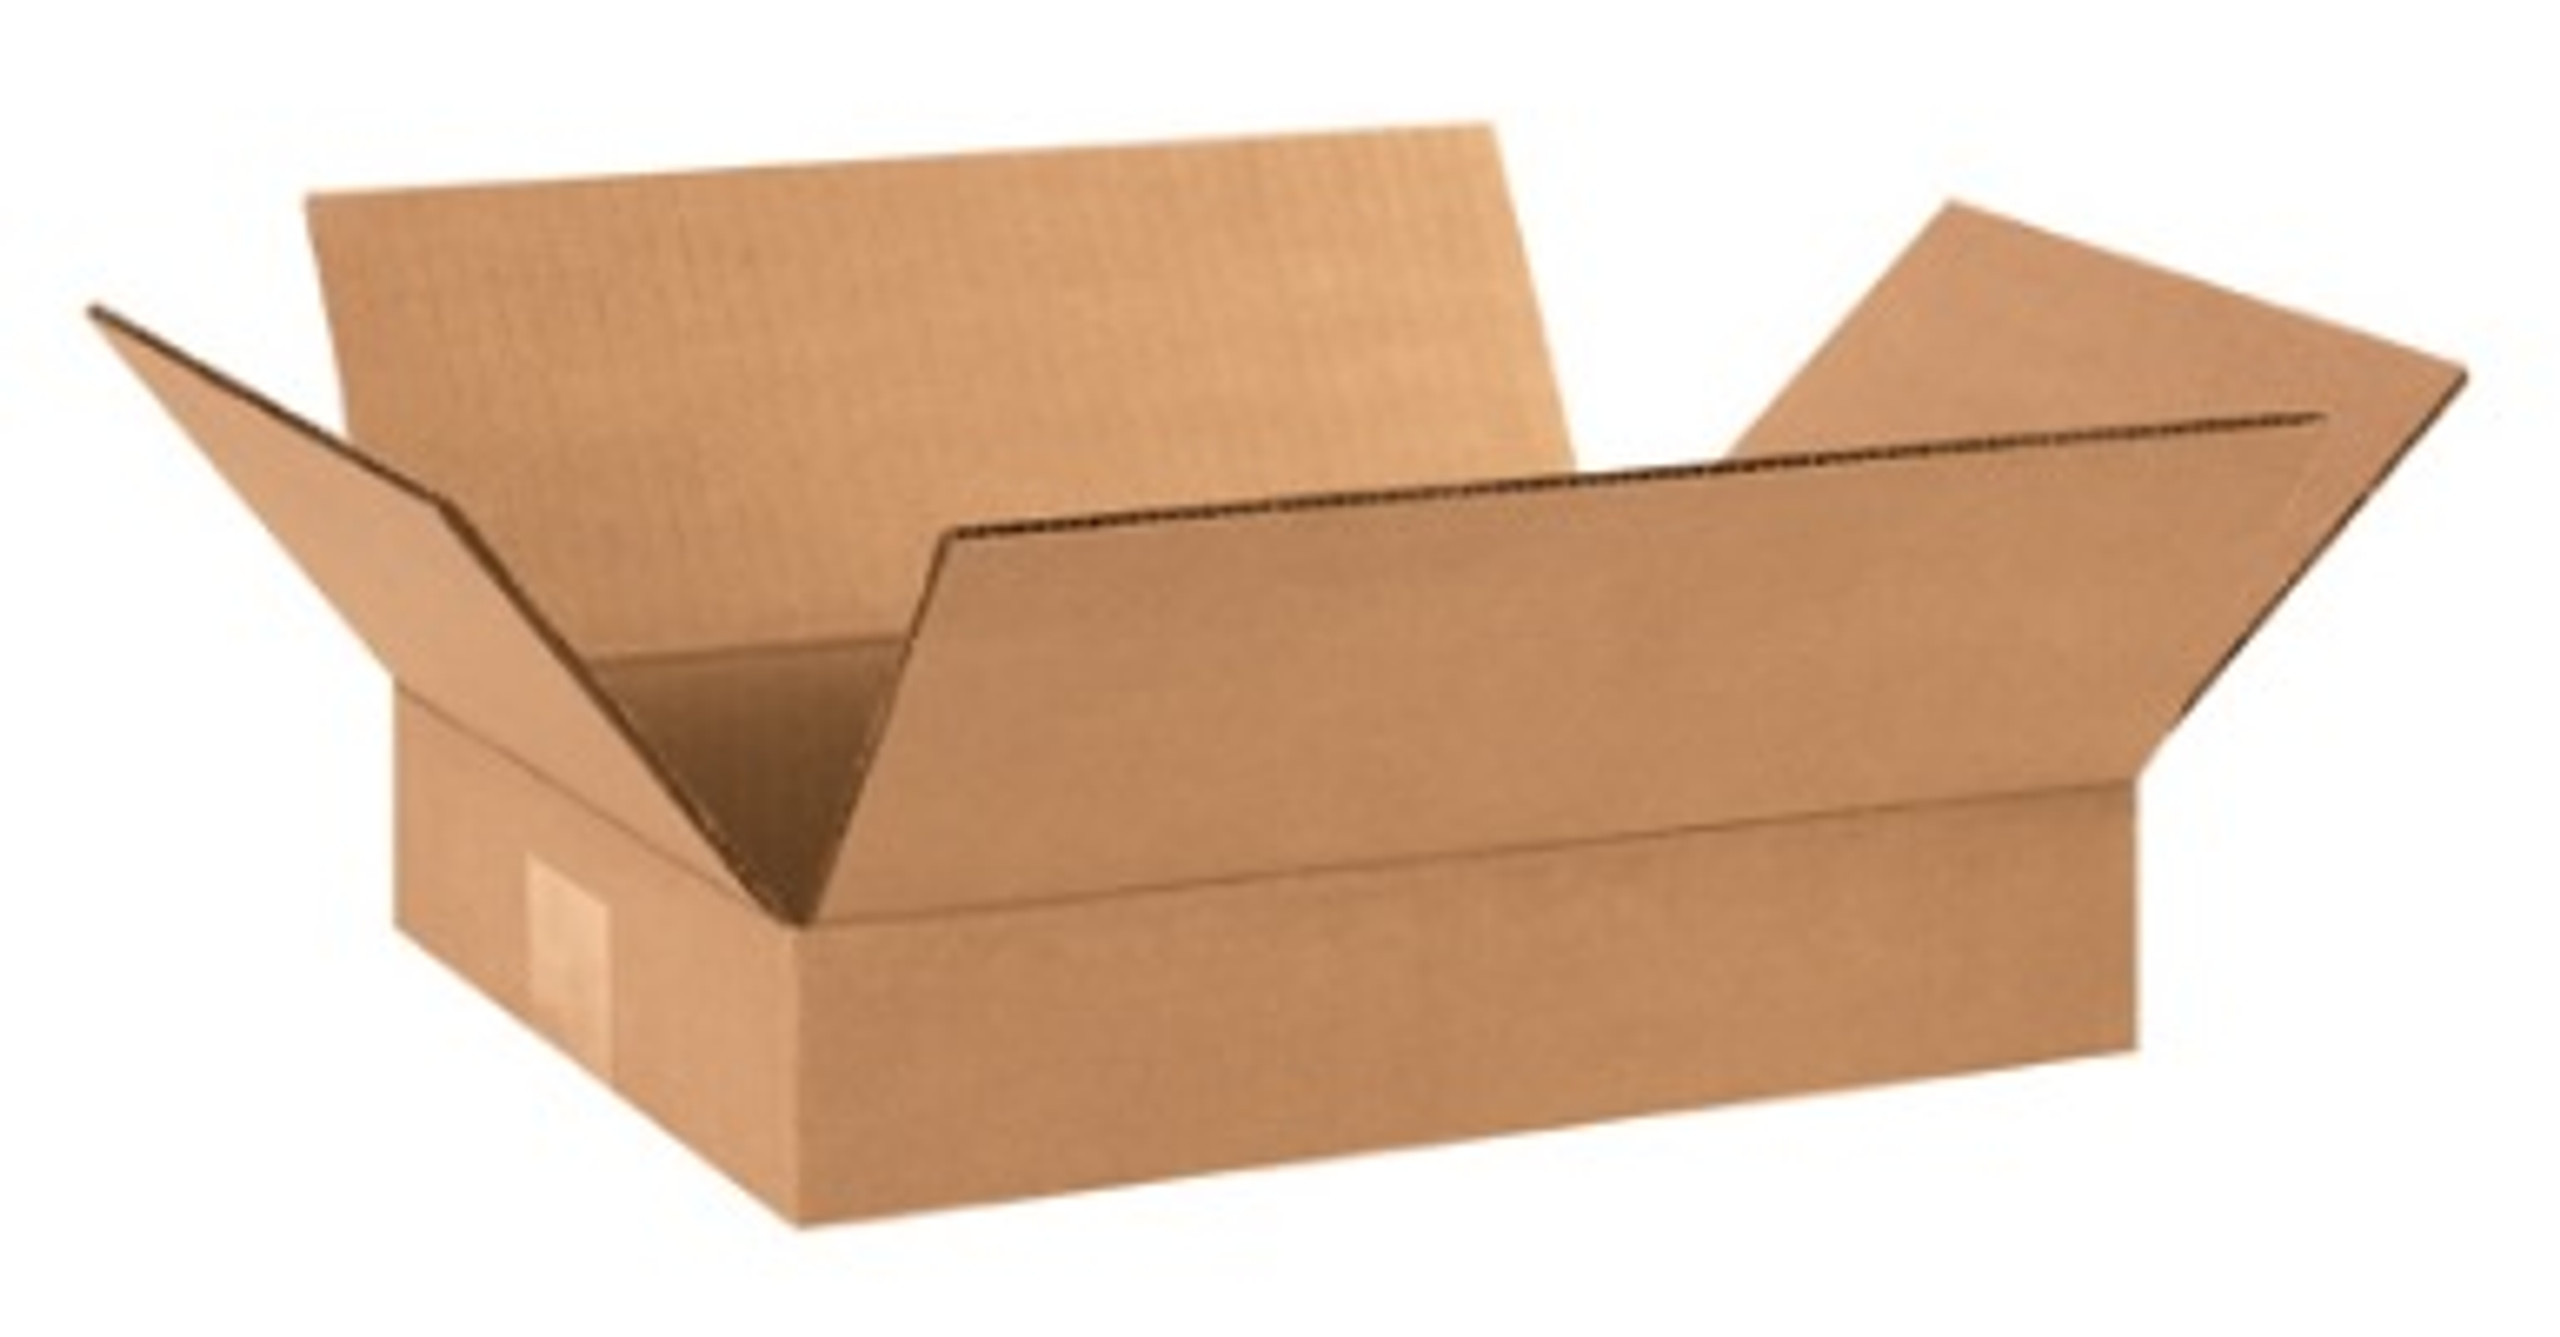 cardboard mattress shipping box 20inch